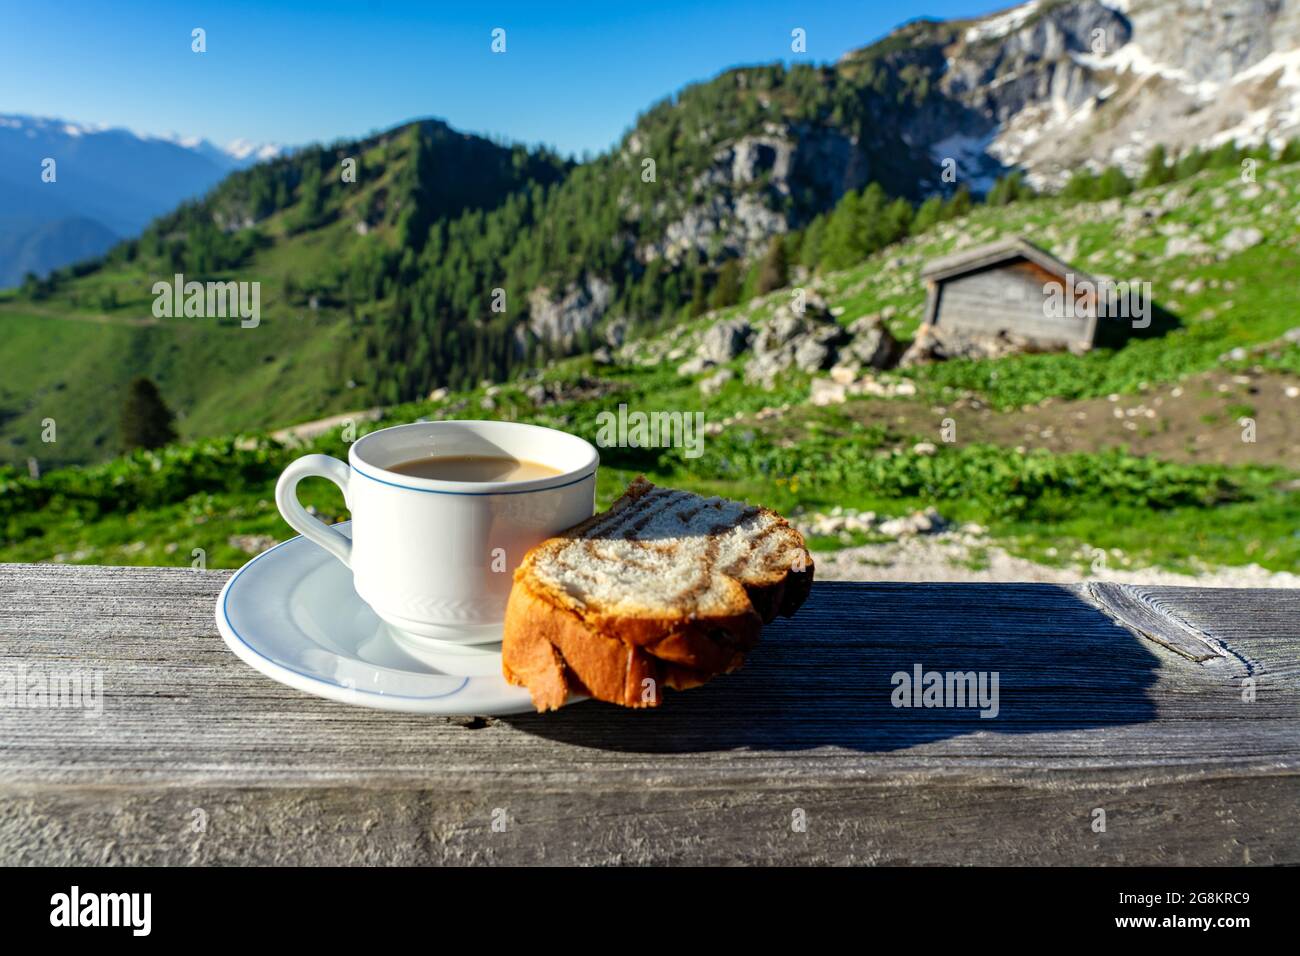 Trinken einer Tasse caffee mit Frühstück über die Berge in Tirol auf einer Hütte Terrasse Stockfoto